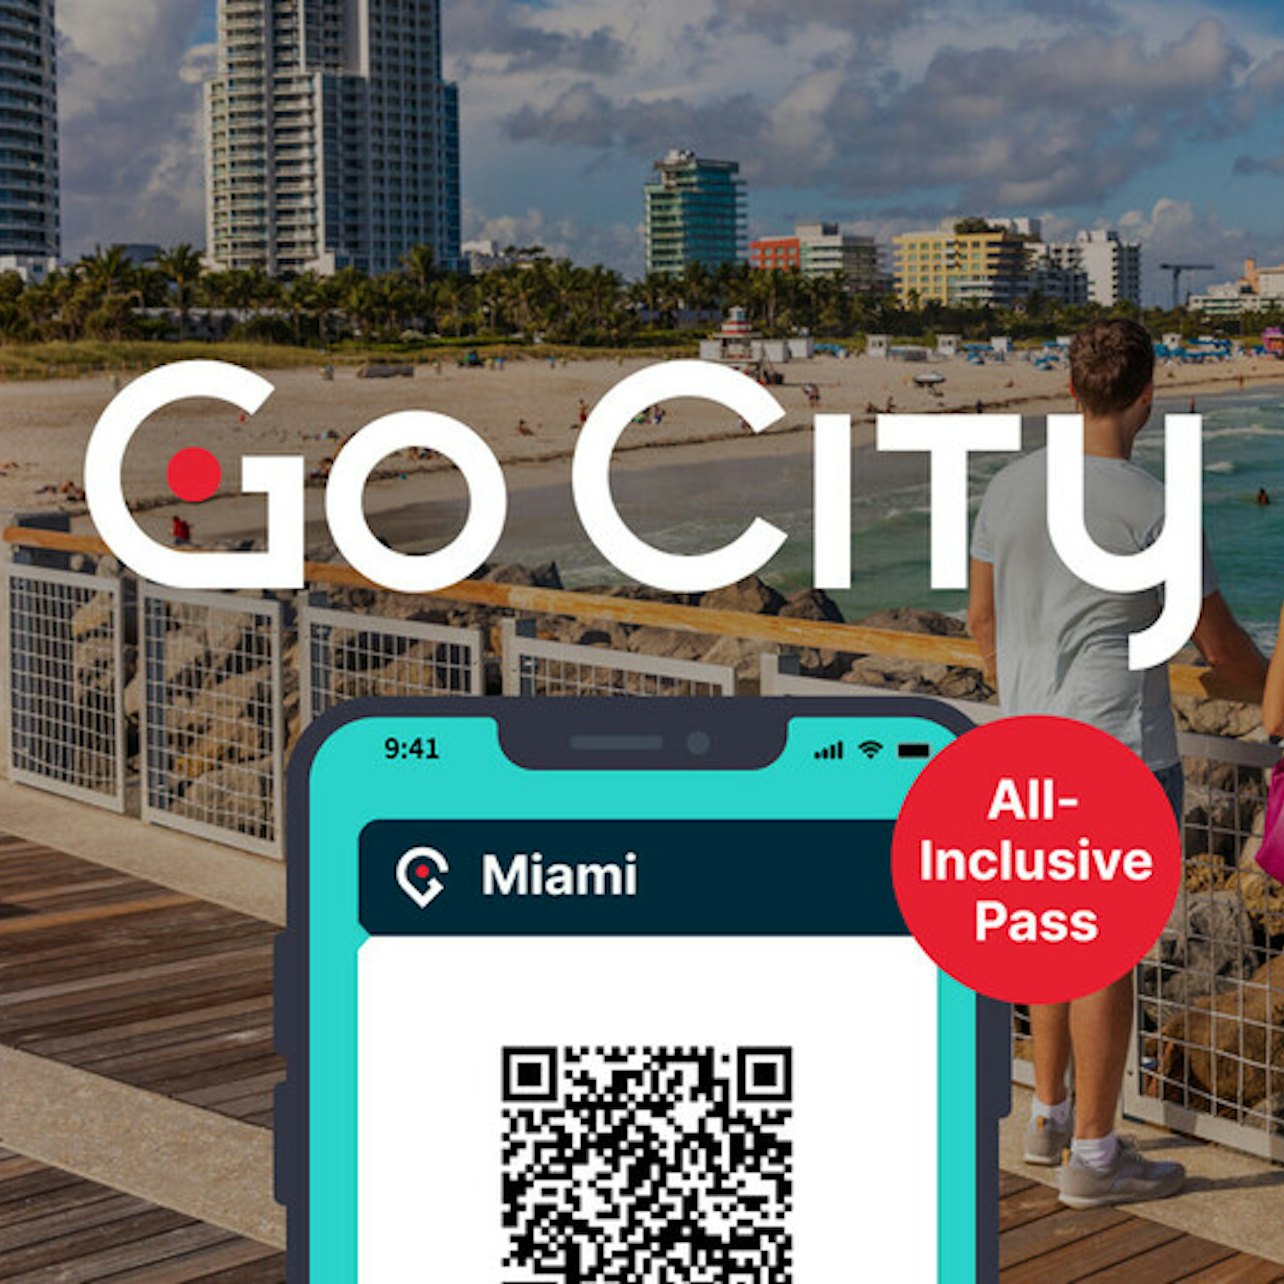 Go City Miami: All-Inclusive Pass - Accommodations in Miami